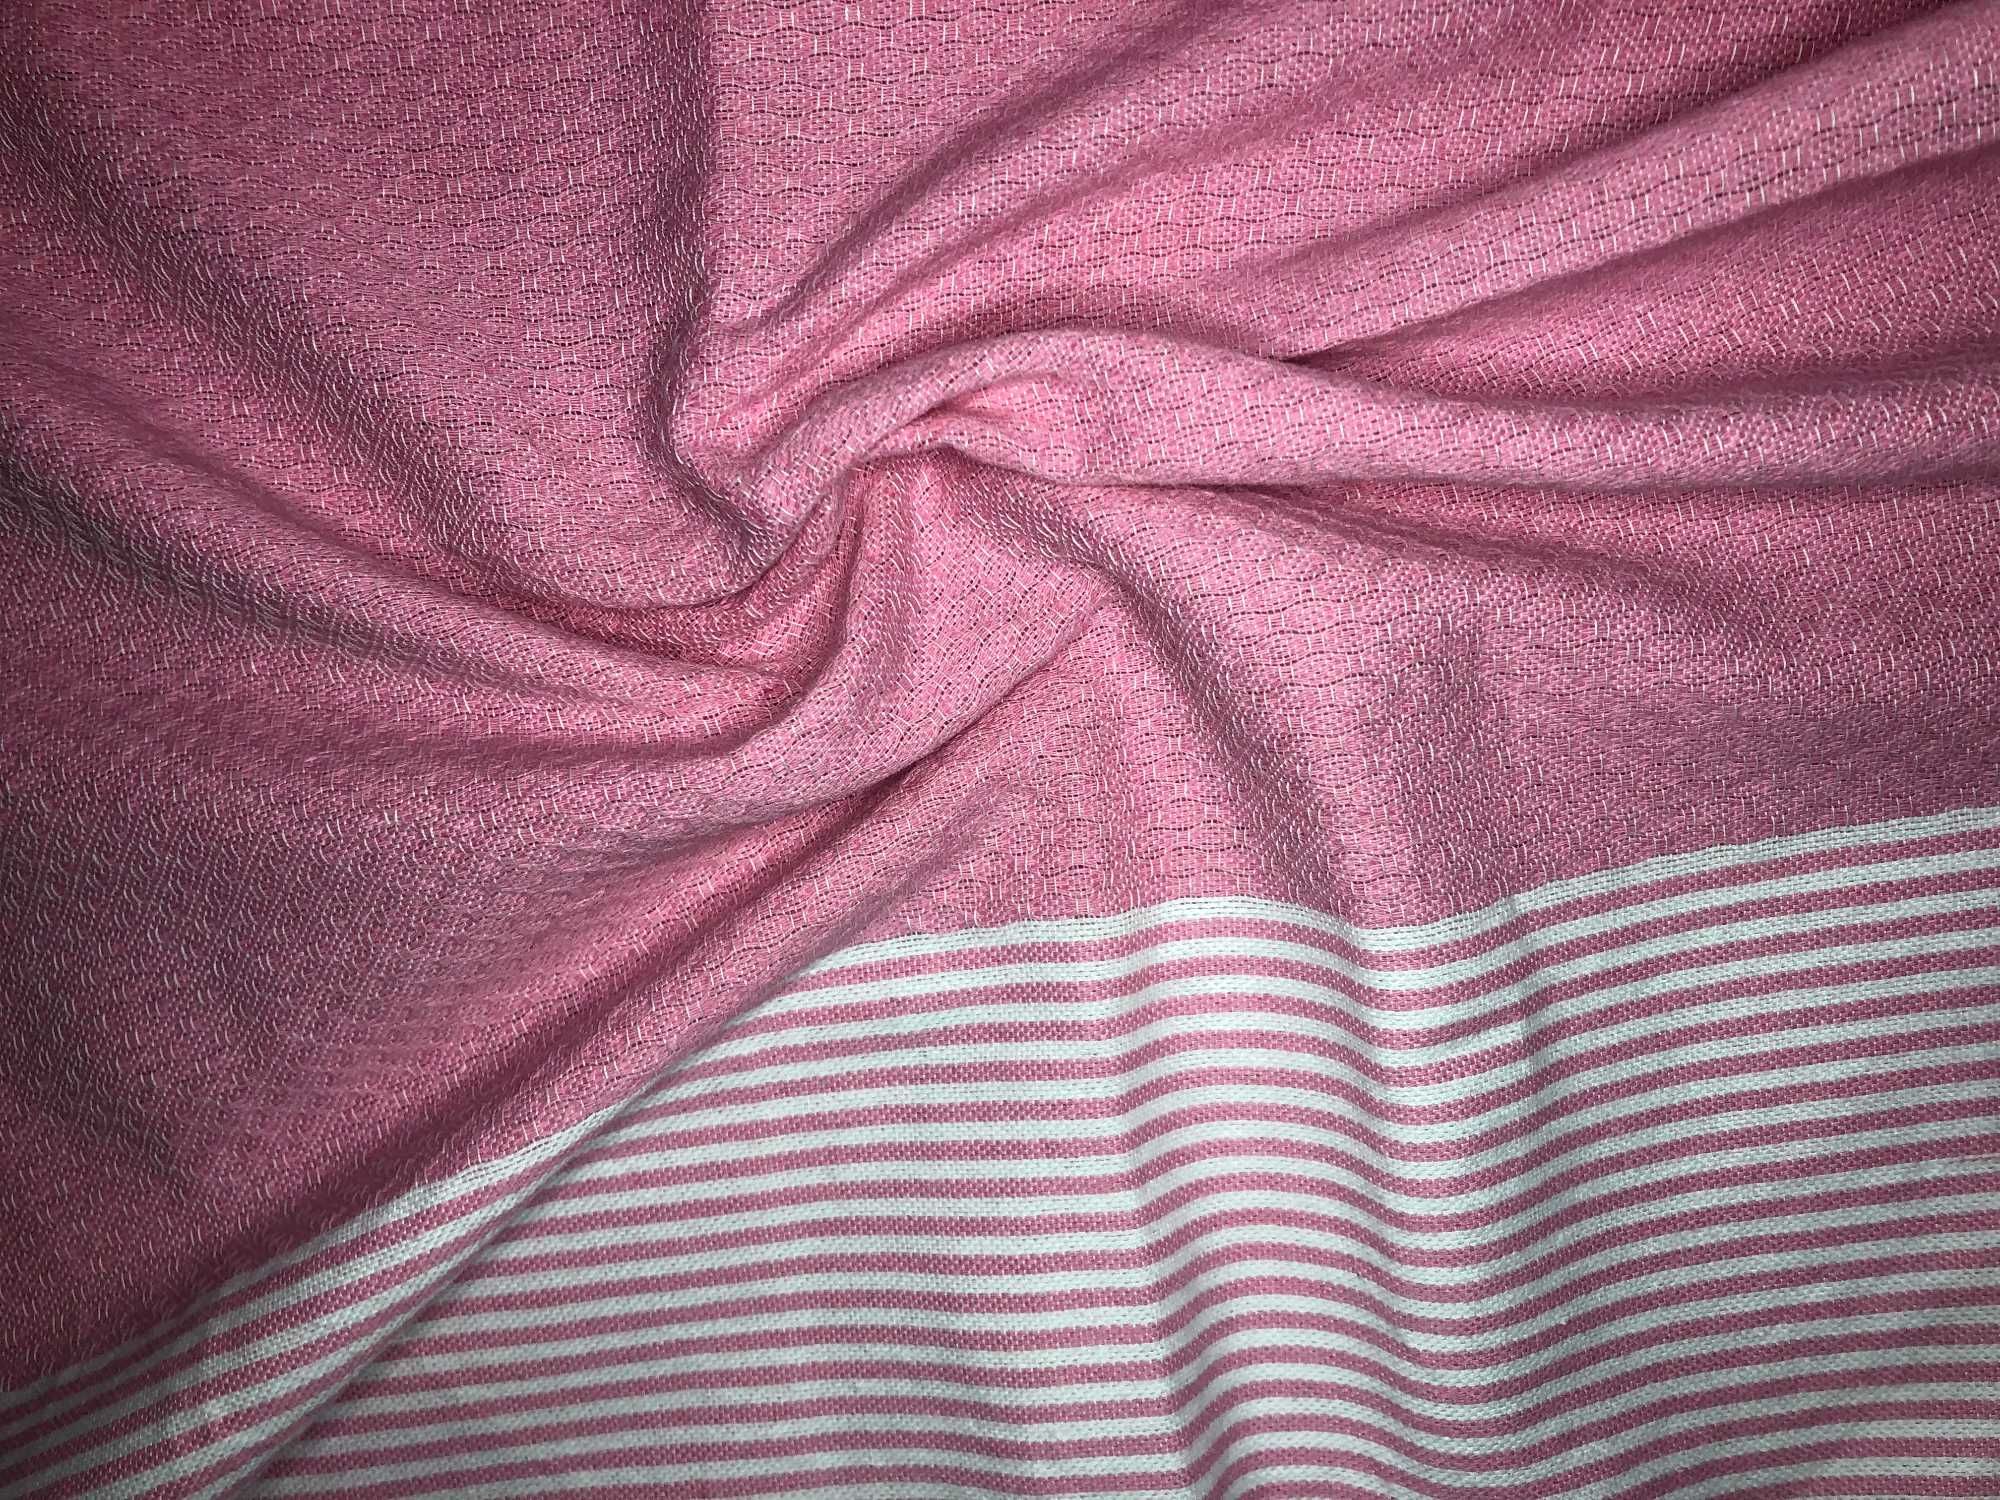 1067 Oryginalny Ręcznik Plażowy Do Sauny SPA Hammam Bawełna 100x190